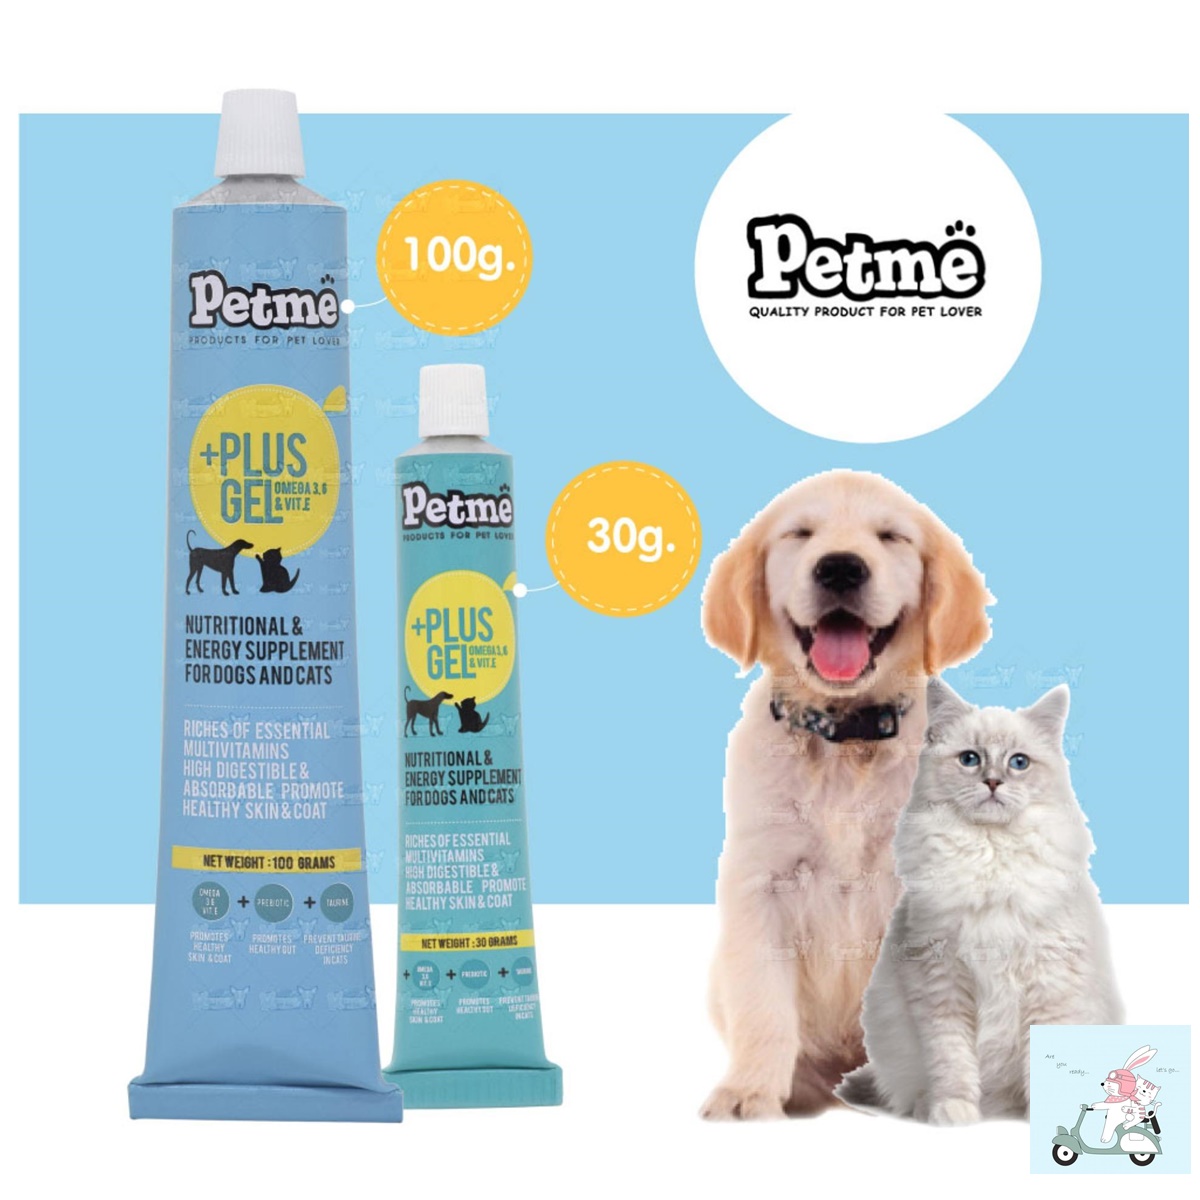 Petme Plus Gel Dog Cat เพ็ทมี เจล อาหารเสริม สุนัขแมว อาหารทดแทน สัตว์เลี้ยงชนิดเจล ขนาด 30 g